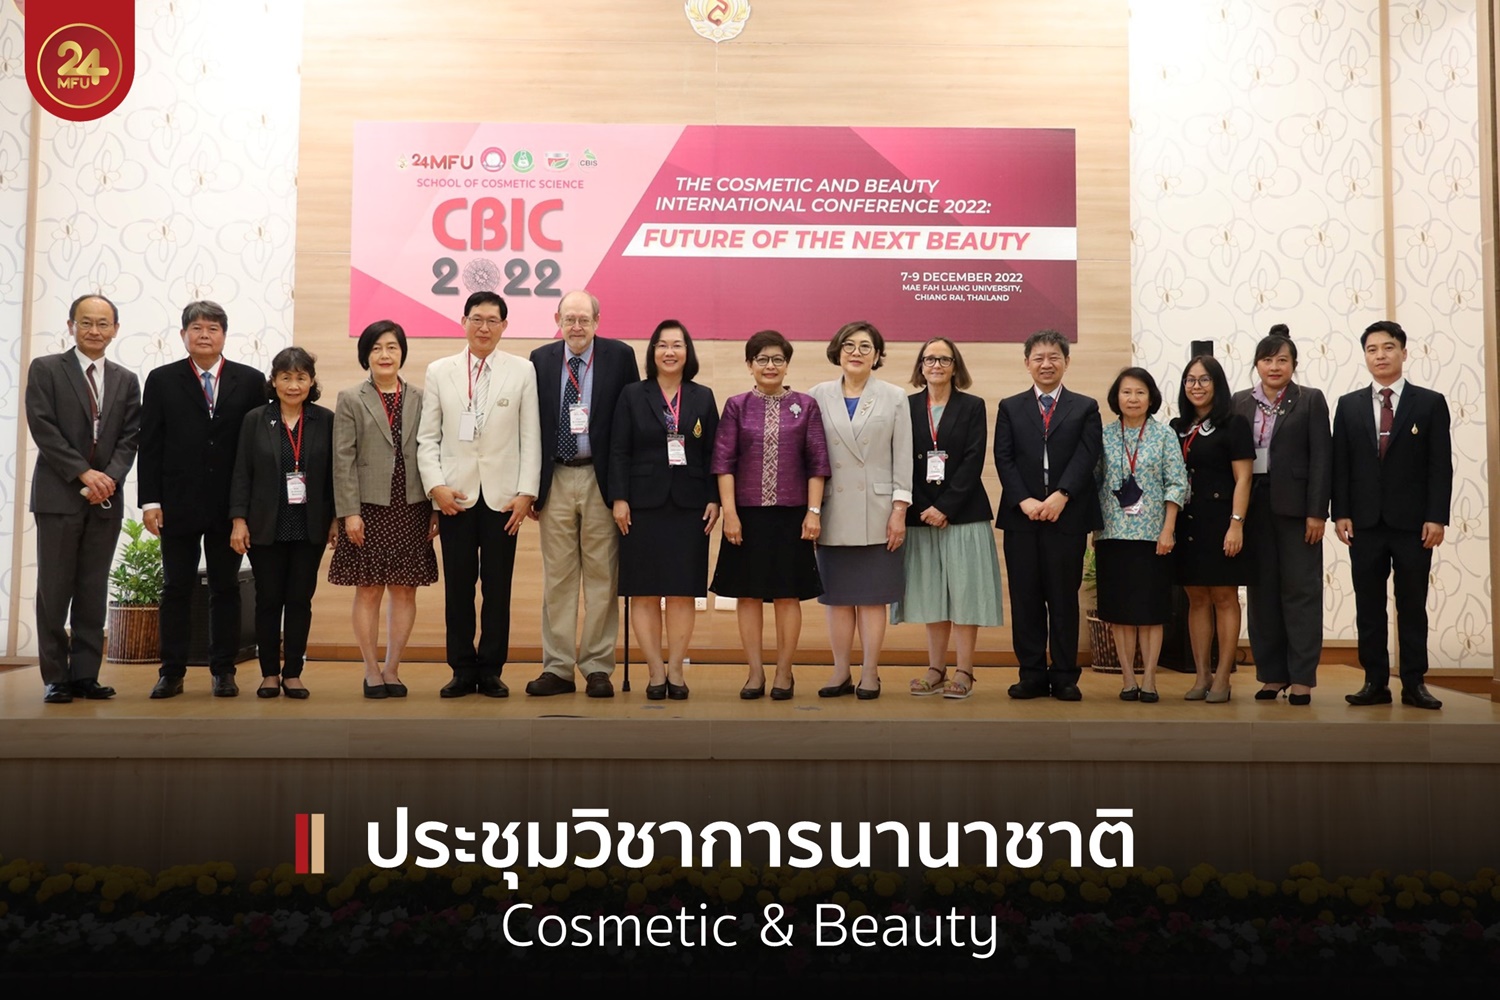 มฟล.จัดประชุมวิชาการนานาชาติ “The Cosmetic and Beauty International Conference 2022 (CBIC 2022)”  